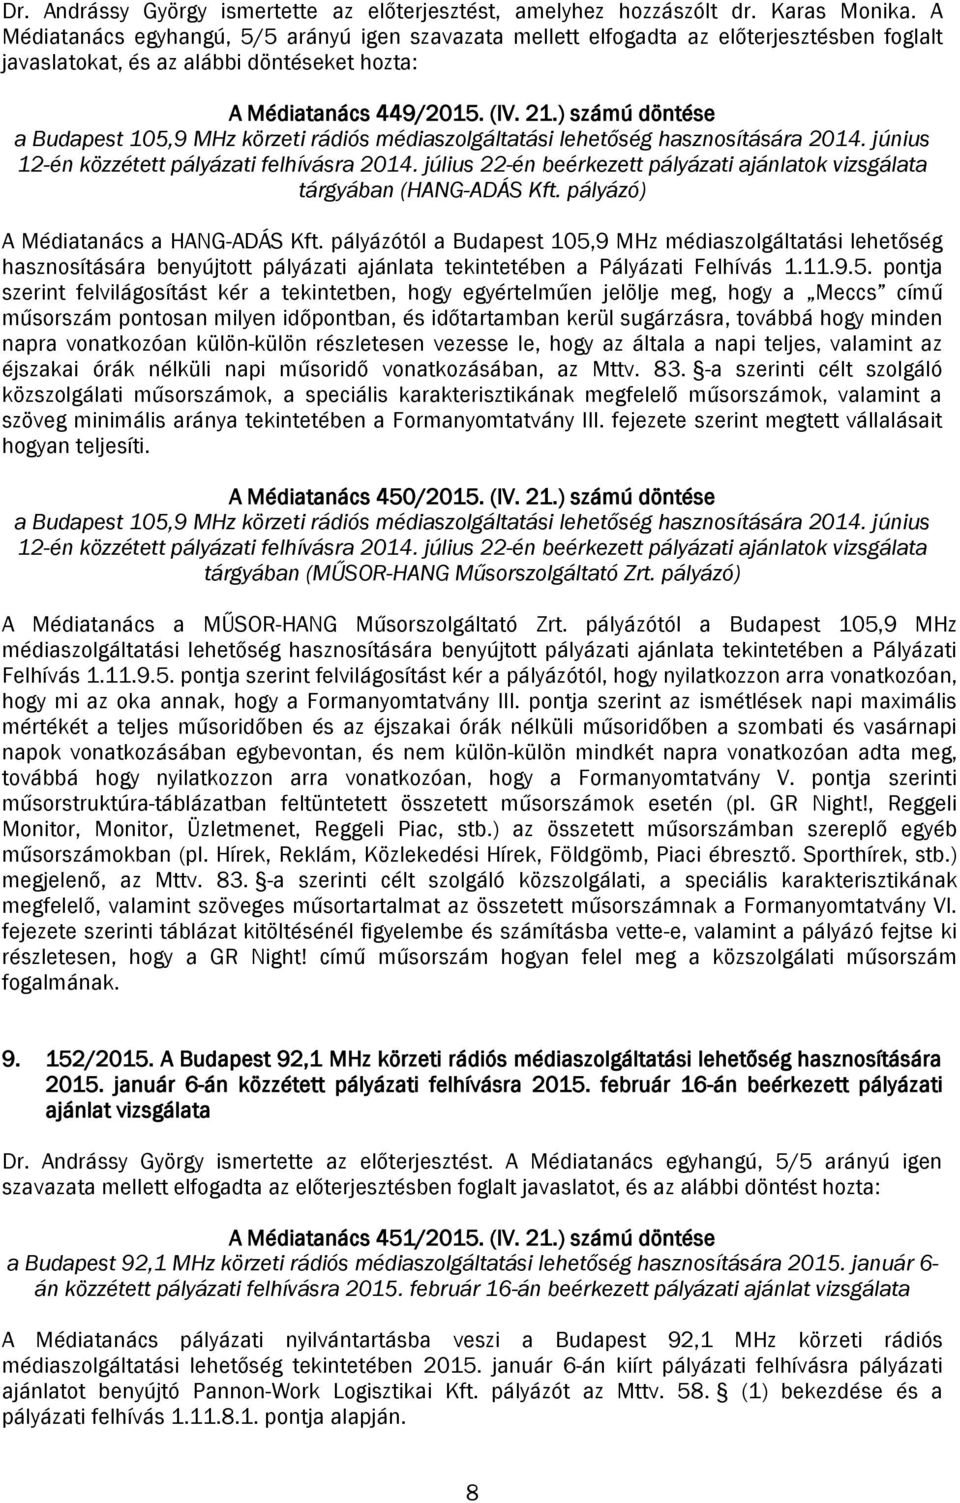 ) számú döntése a Budapest 105,9 MHz körzeti rádiós médiaszolgáltatási lehetőség hasznosítására 2014. június 12-én közzétett pályázati felhívásra 2014.